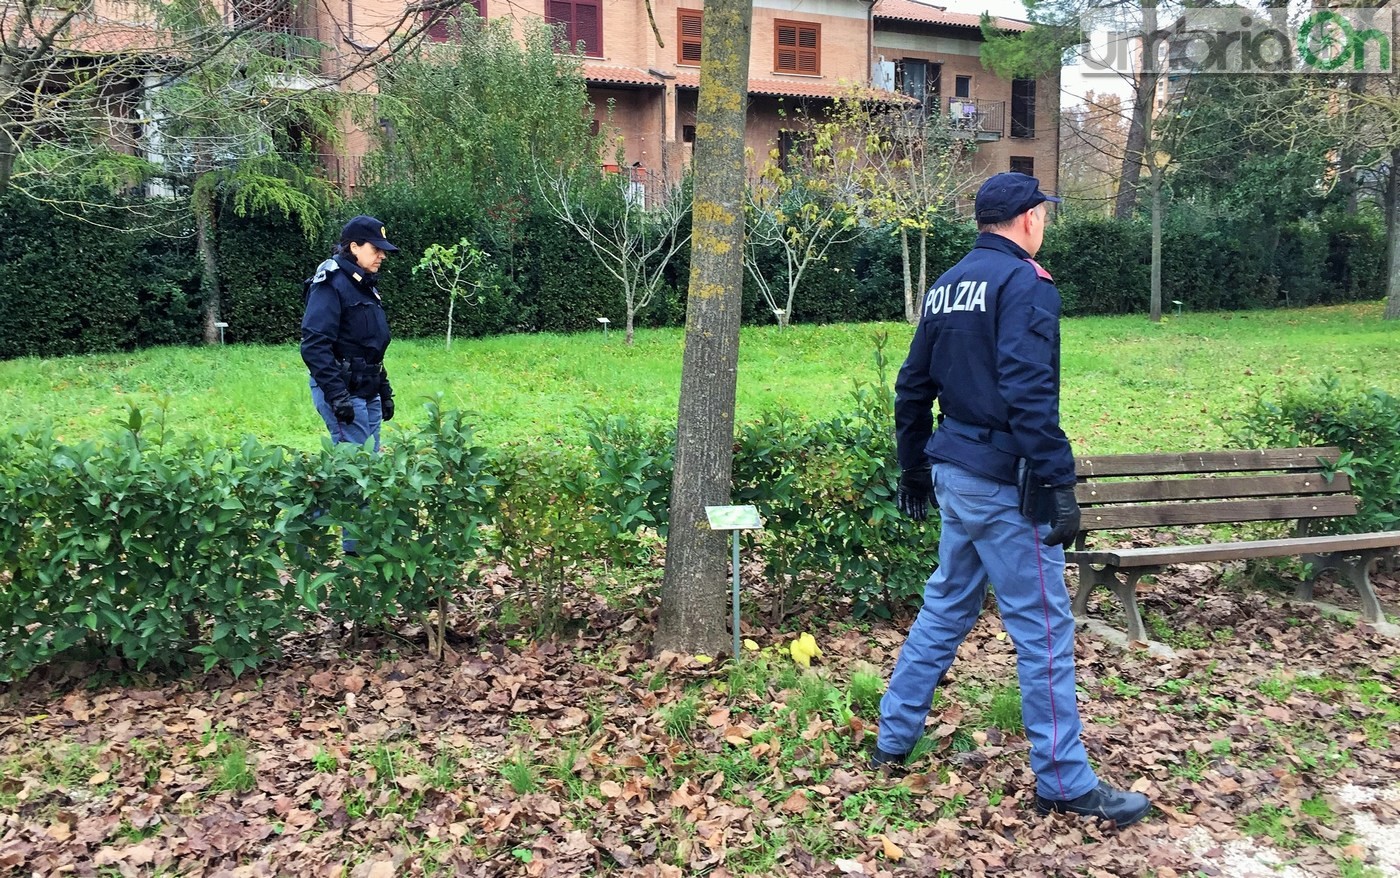 Parco fluviale urbano San Martino, polizia Volante. Controlli droga degrado - 2 dicembre 2016 (22)